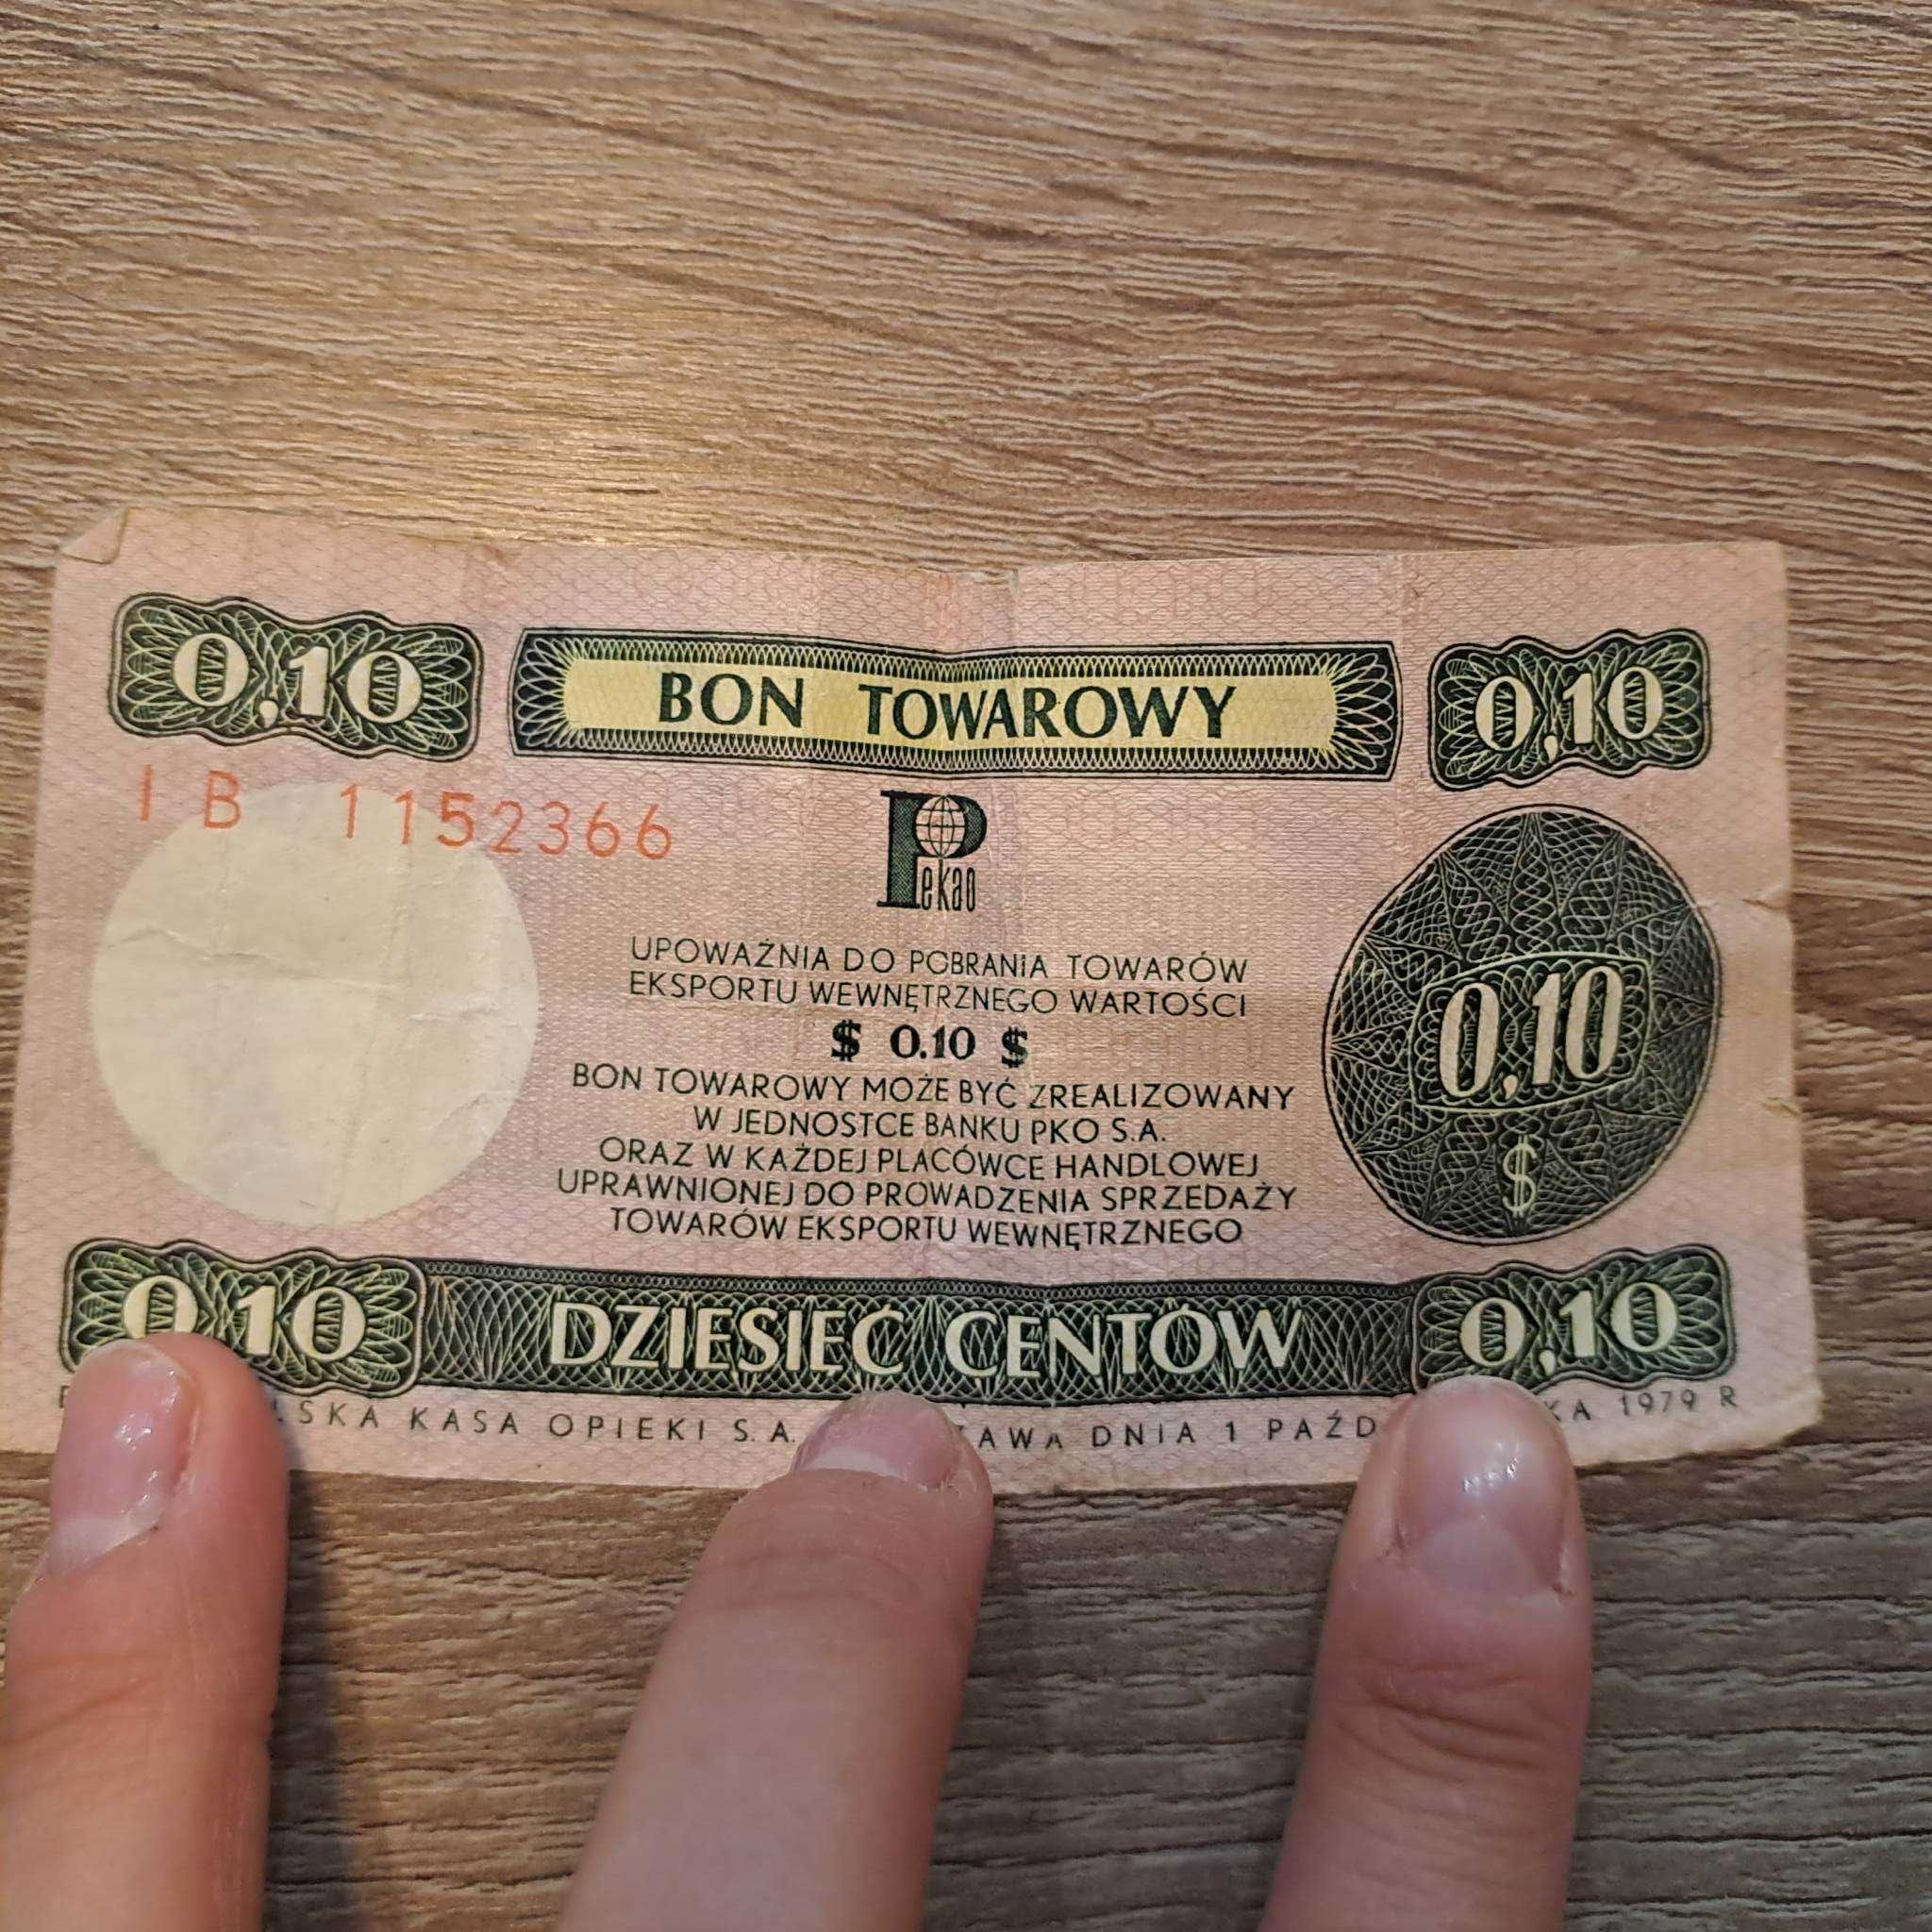 Bon towarowy 0,10 centów rok 1979 Polska